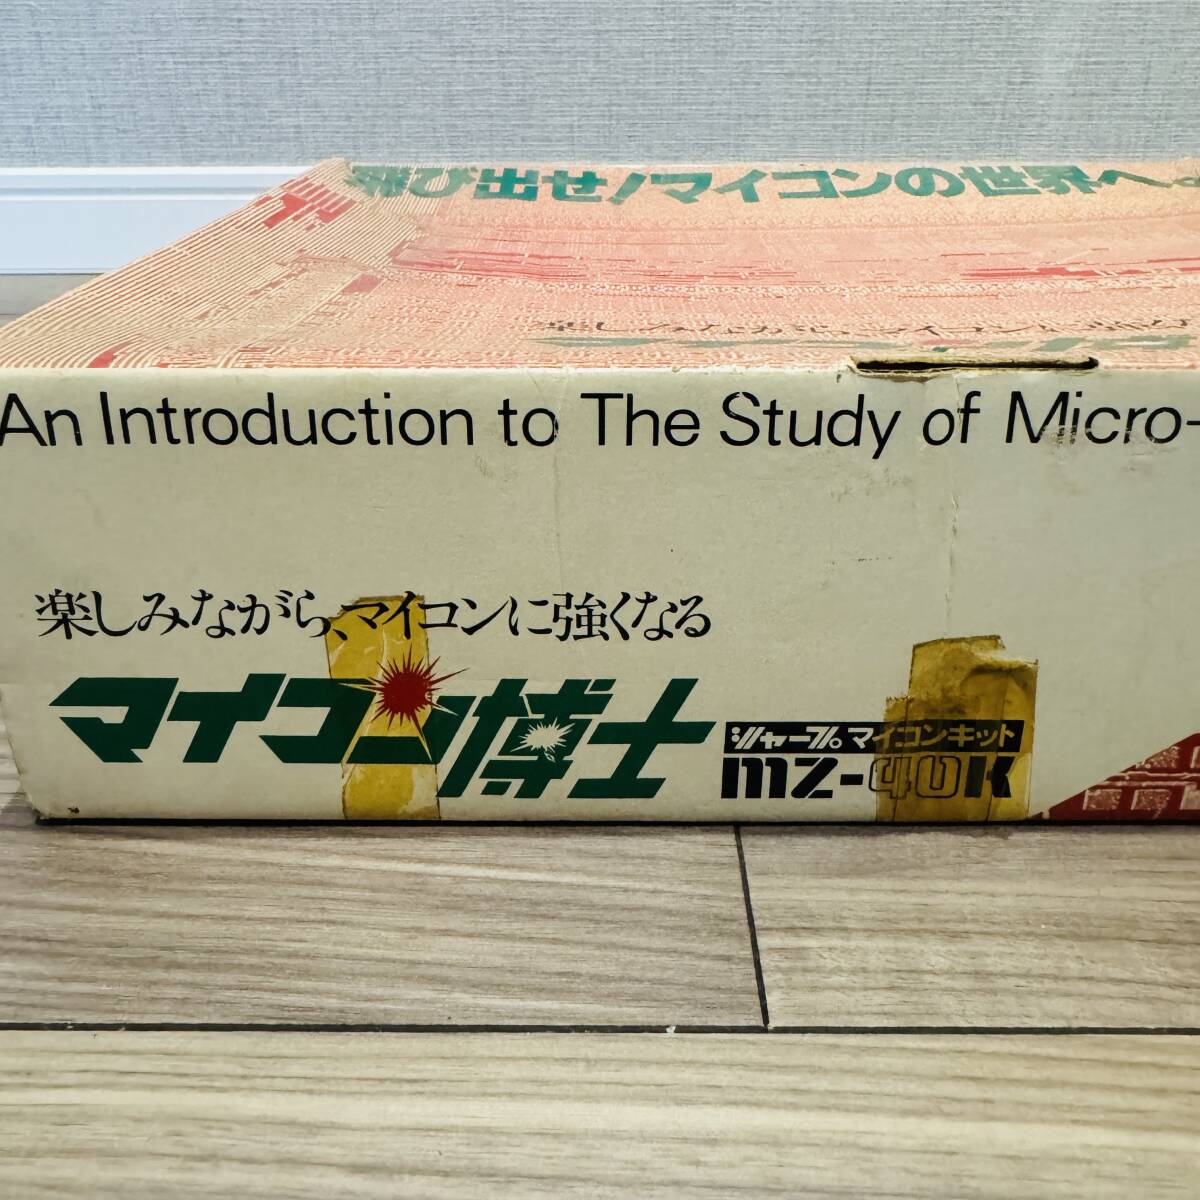  изначальный с коробкой SHARP sharp microcomputer ..MZ-40K 4 bit microcomputer комплект 1978 год продажа Showa Retro подлинная вещь 